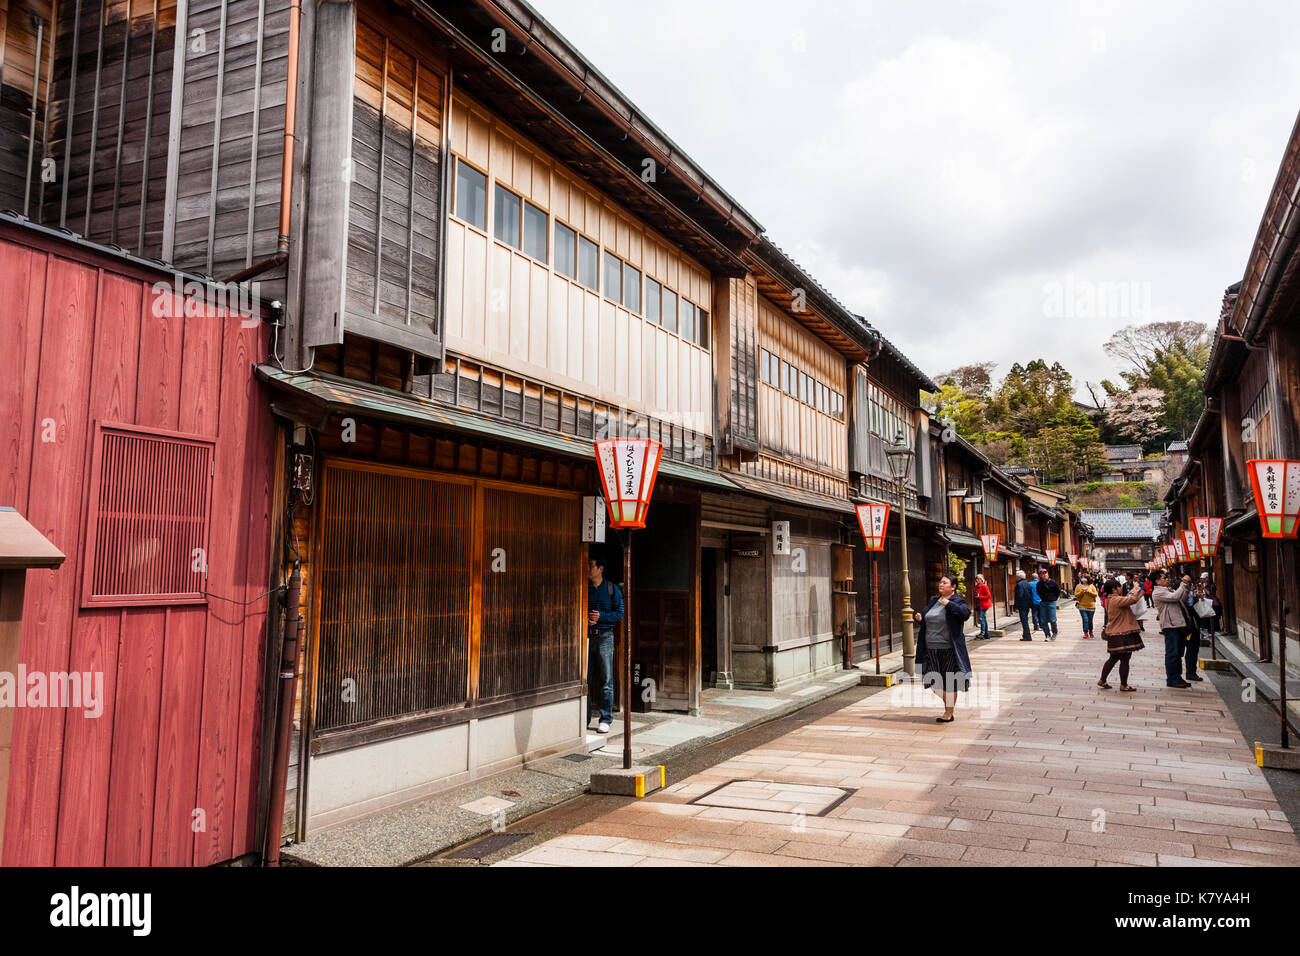 Beliebtes Ausflugsziel, Higashi Chaya Bezirk in Kanazawa. Strasse gesäumt auf beiden Seiten mit Edo periode Gebäude aus Holz, Ryokan, Geschäfte und Gaststätten. Stockfoto